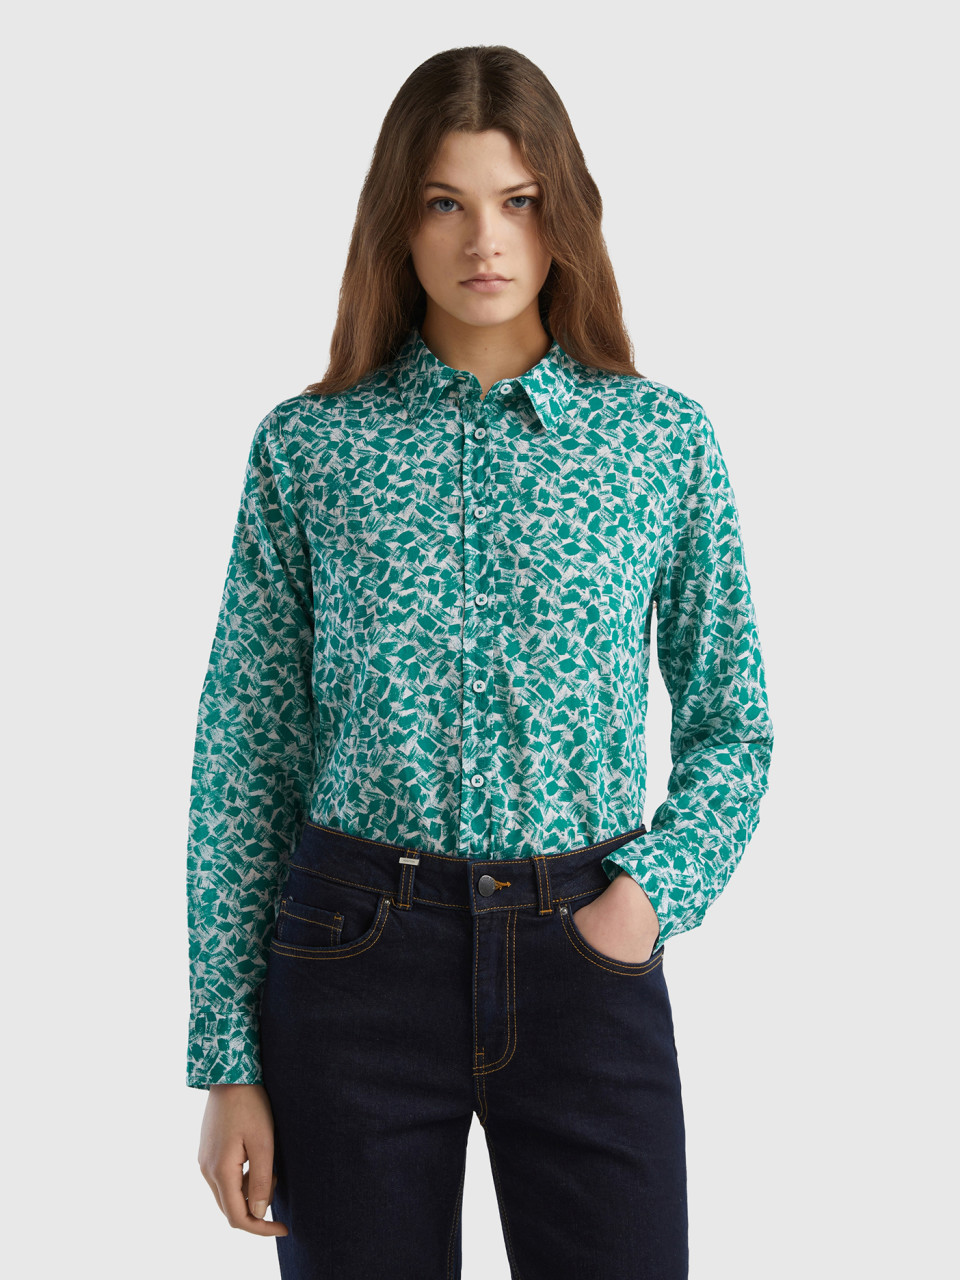 Benetton, 100% Cotton Patterned Shirt, Teal, Women